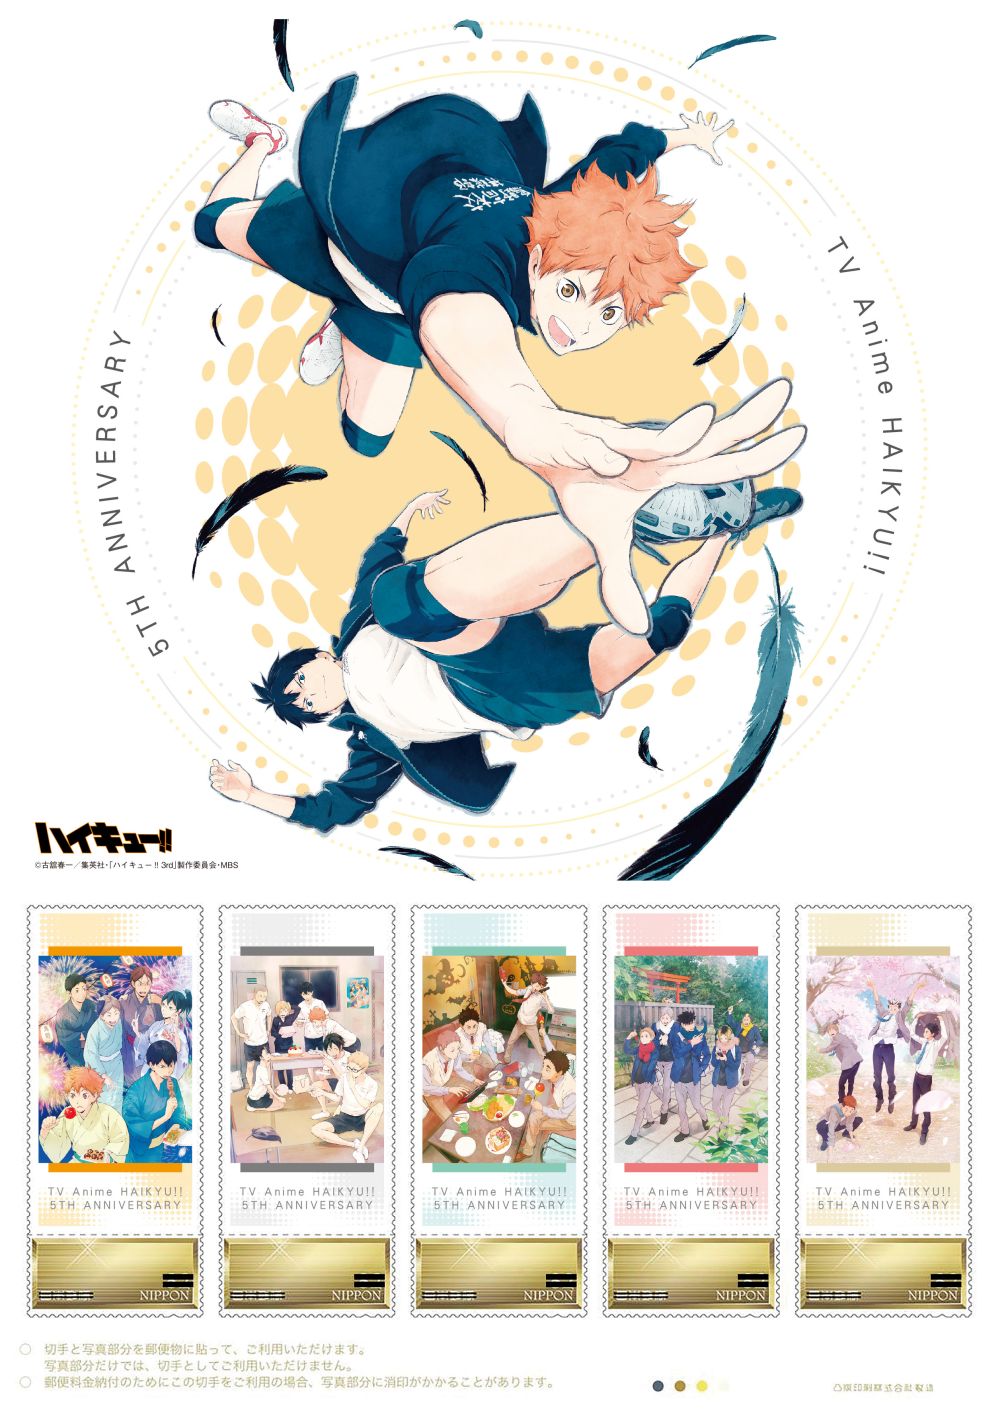 ハイキュー Tvアニメ放送５周年記念フレーム切手セット の販売開始 日本郵便